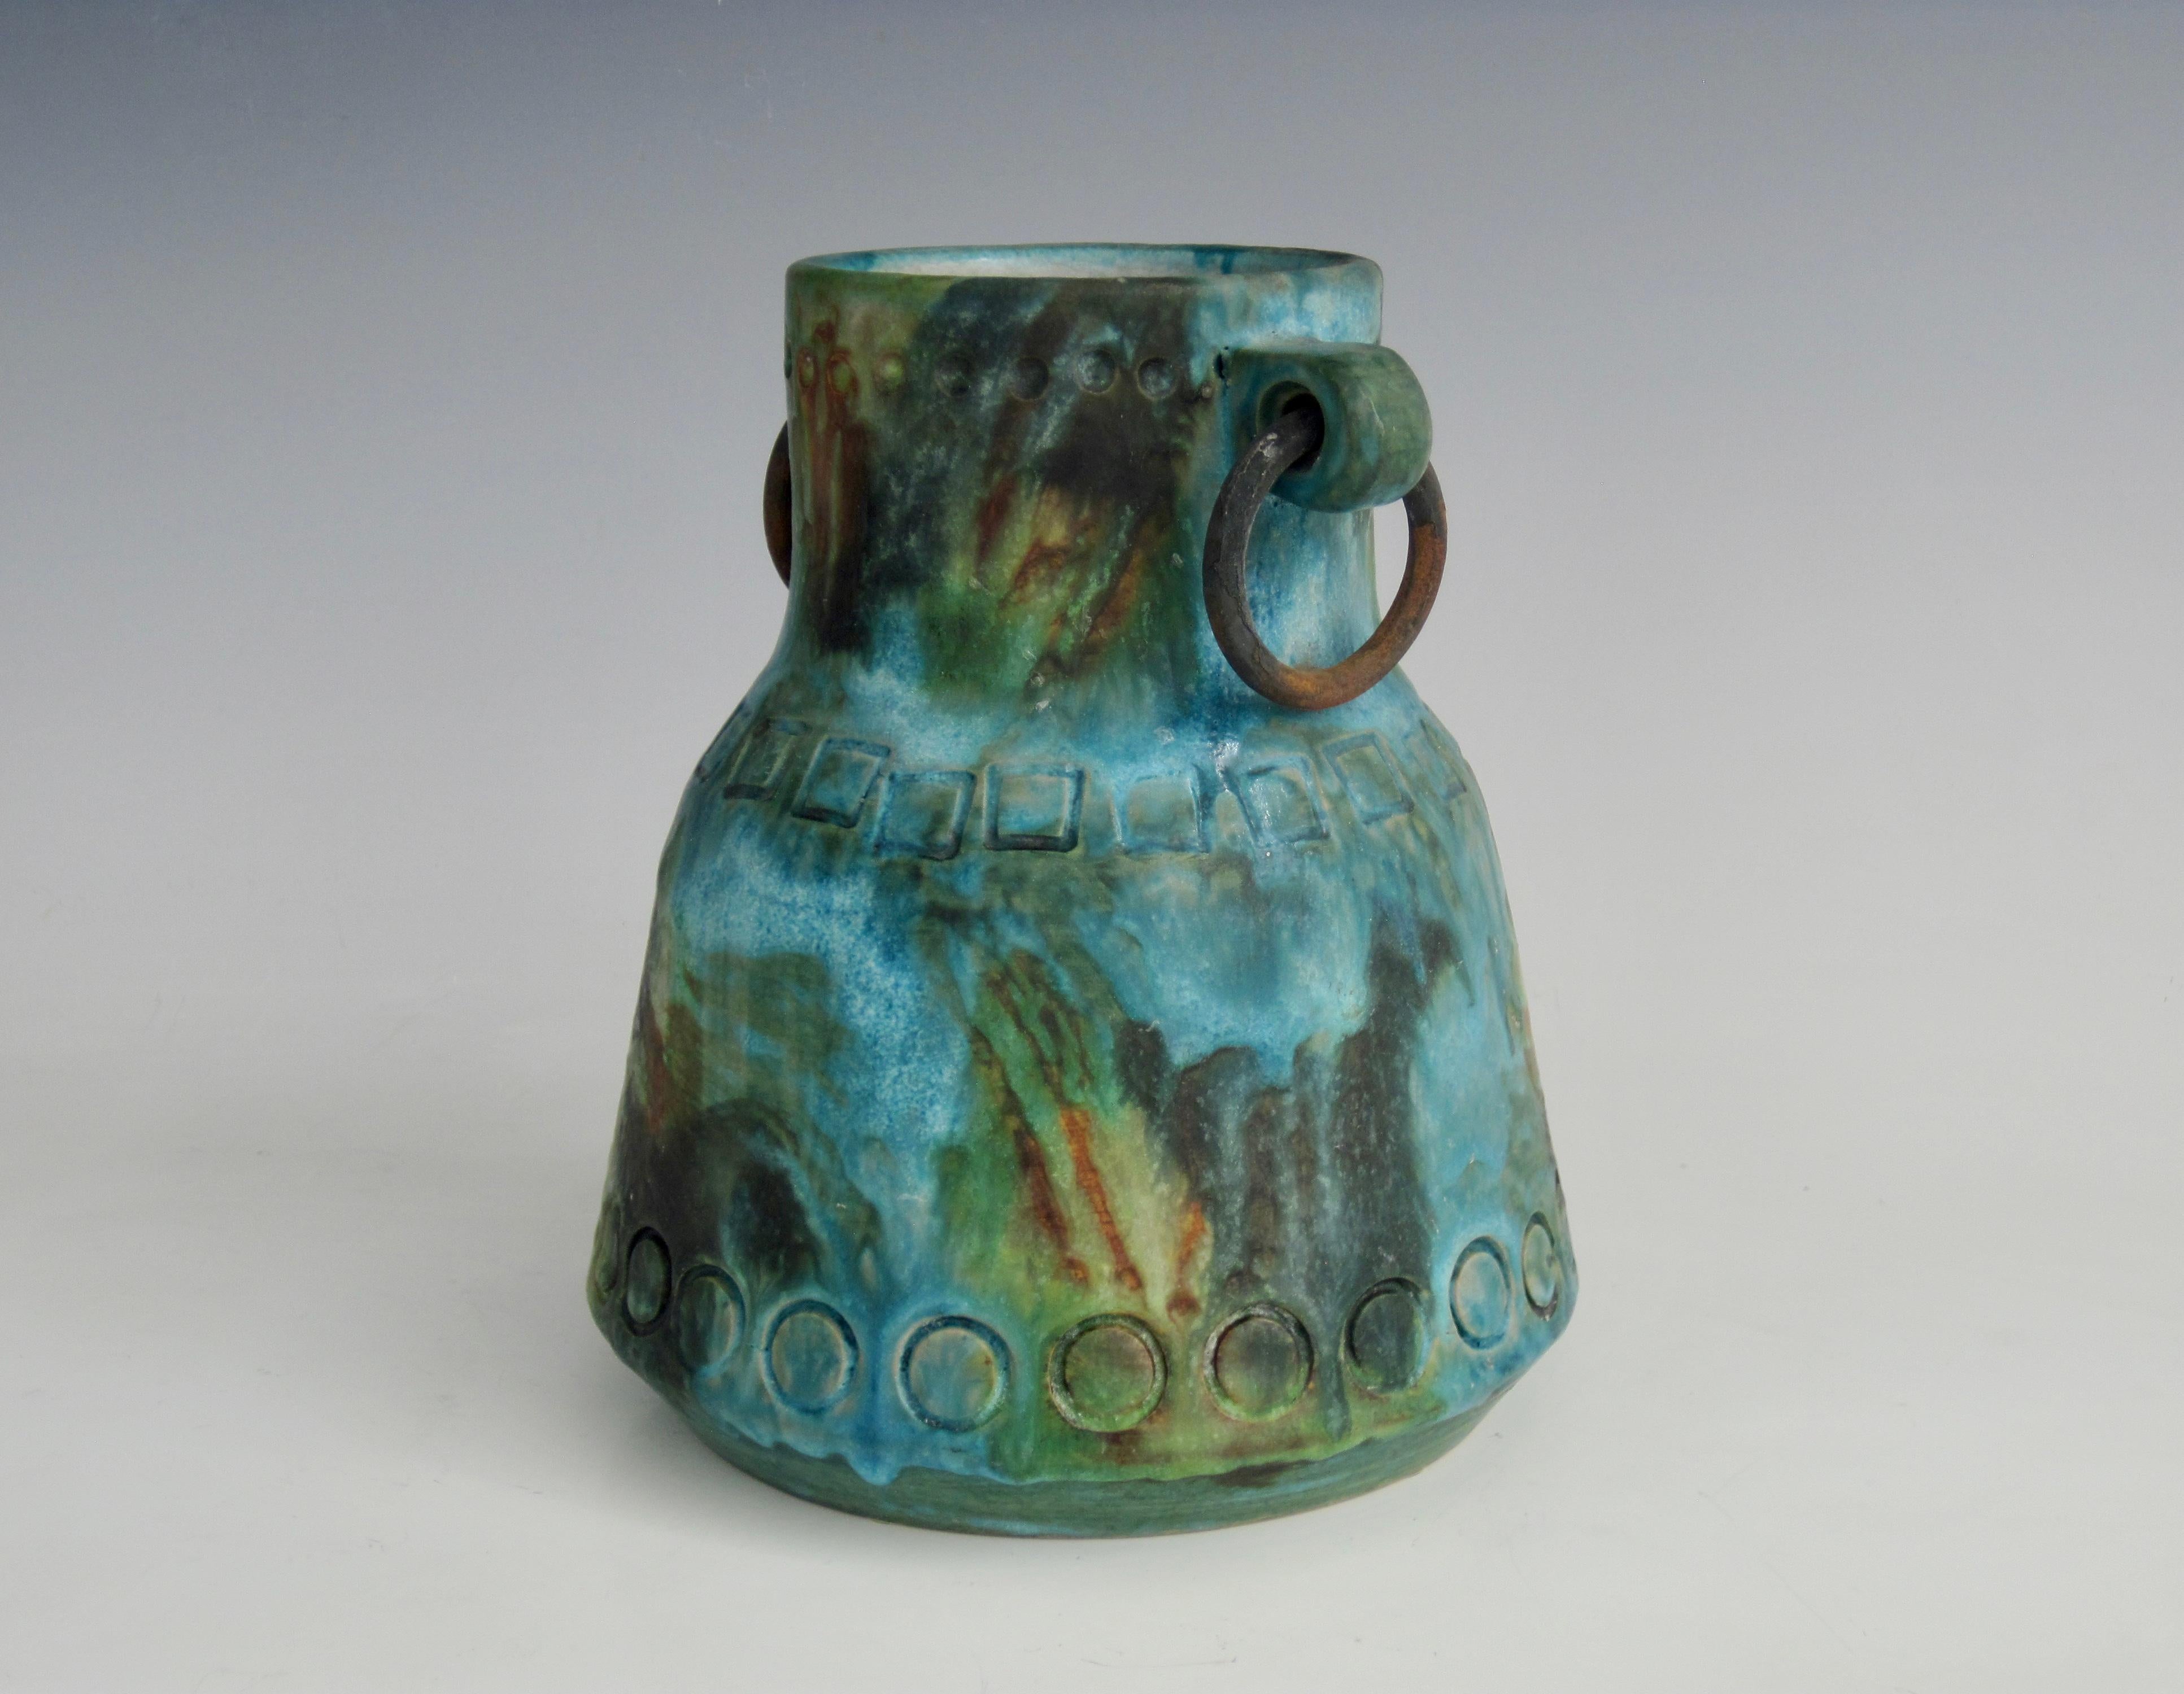 Vase à poignée avec anneaux en laiton de la série Sea Garden d'Alvino Bagni (1919-2000). Cette série composée de turquoise, de bleu, de vert, de jaune, de brun et de noir présente souvent des impressions de surface, comme les cercles et les carrés